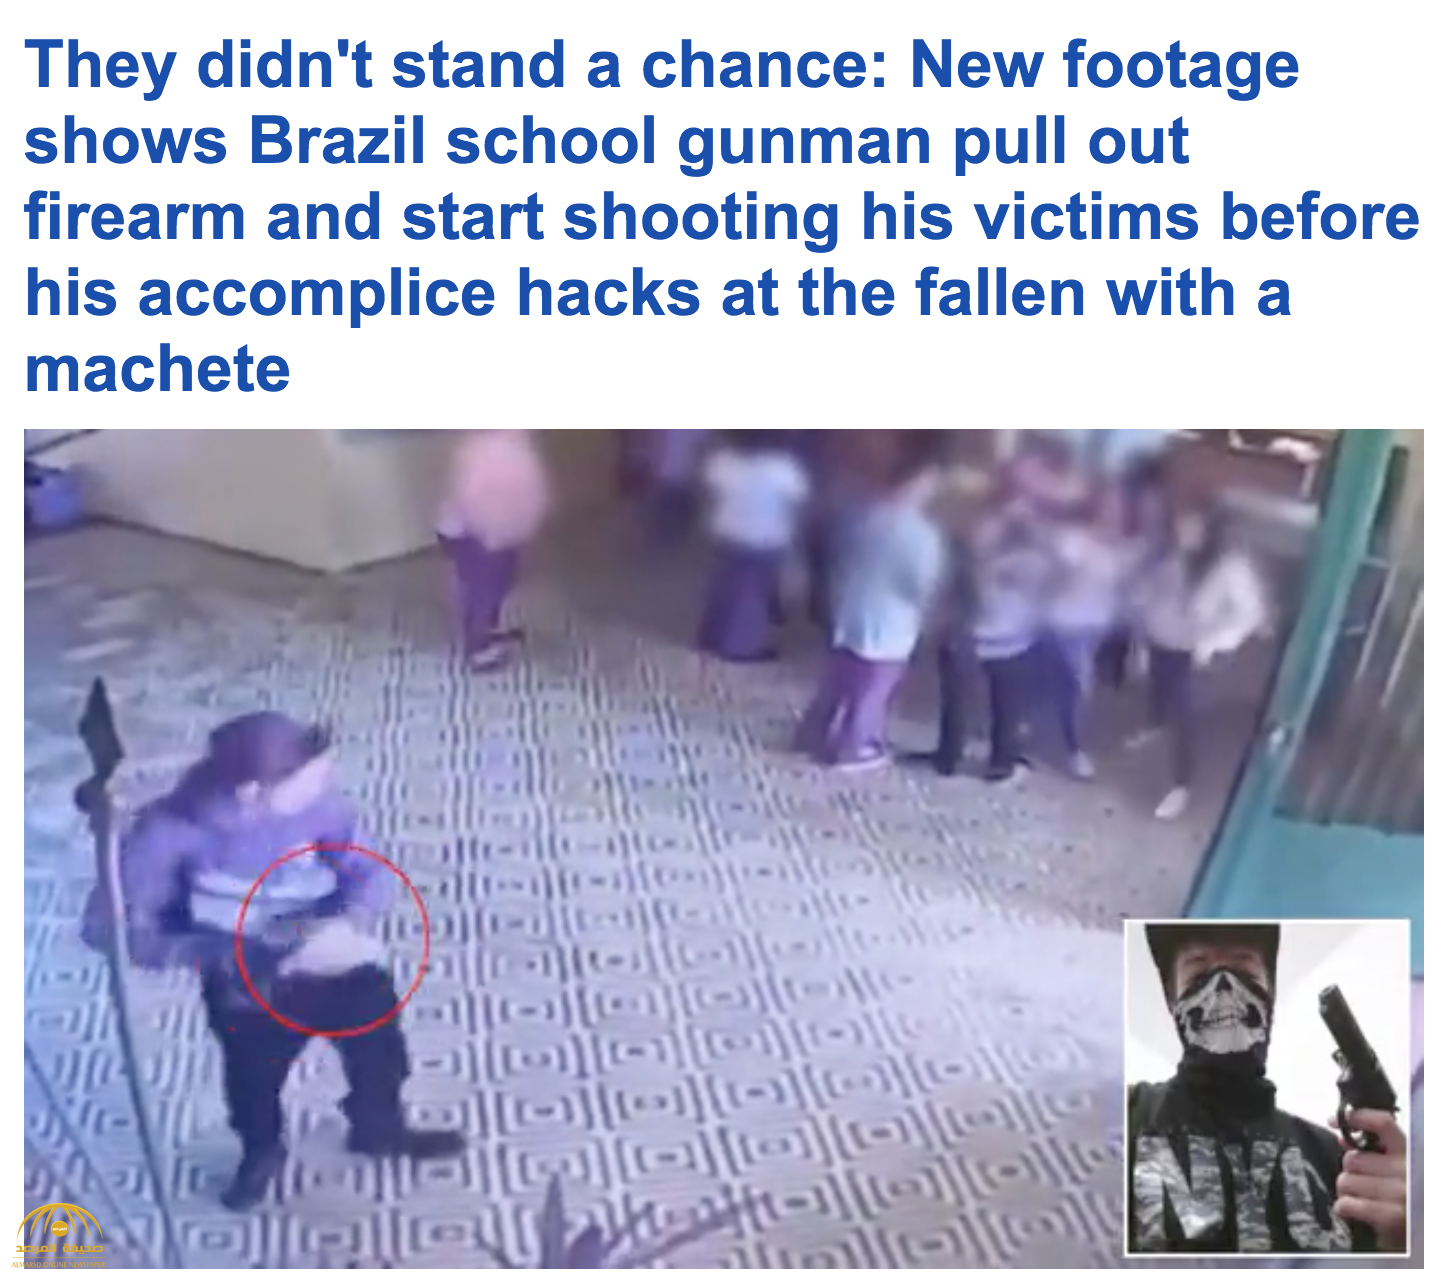 شاهد.. أول فيديو لحظة إطلاق طالب النار على زملائه في مدرسة بالبرازيل